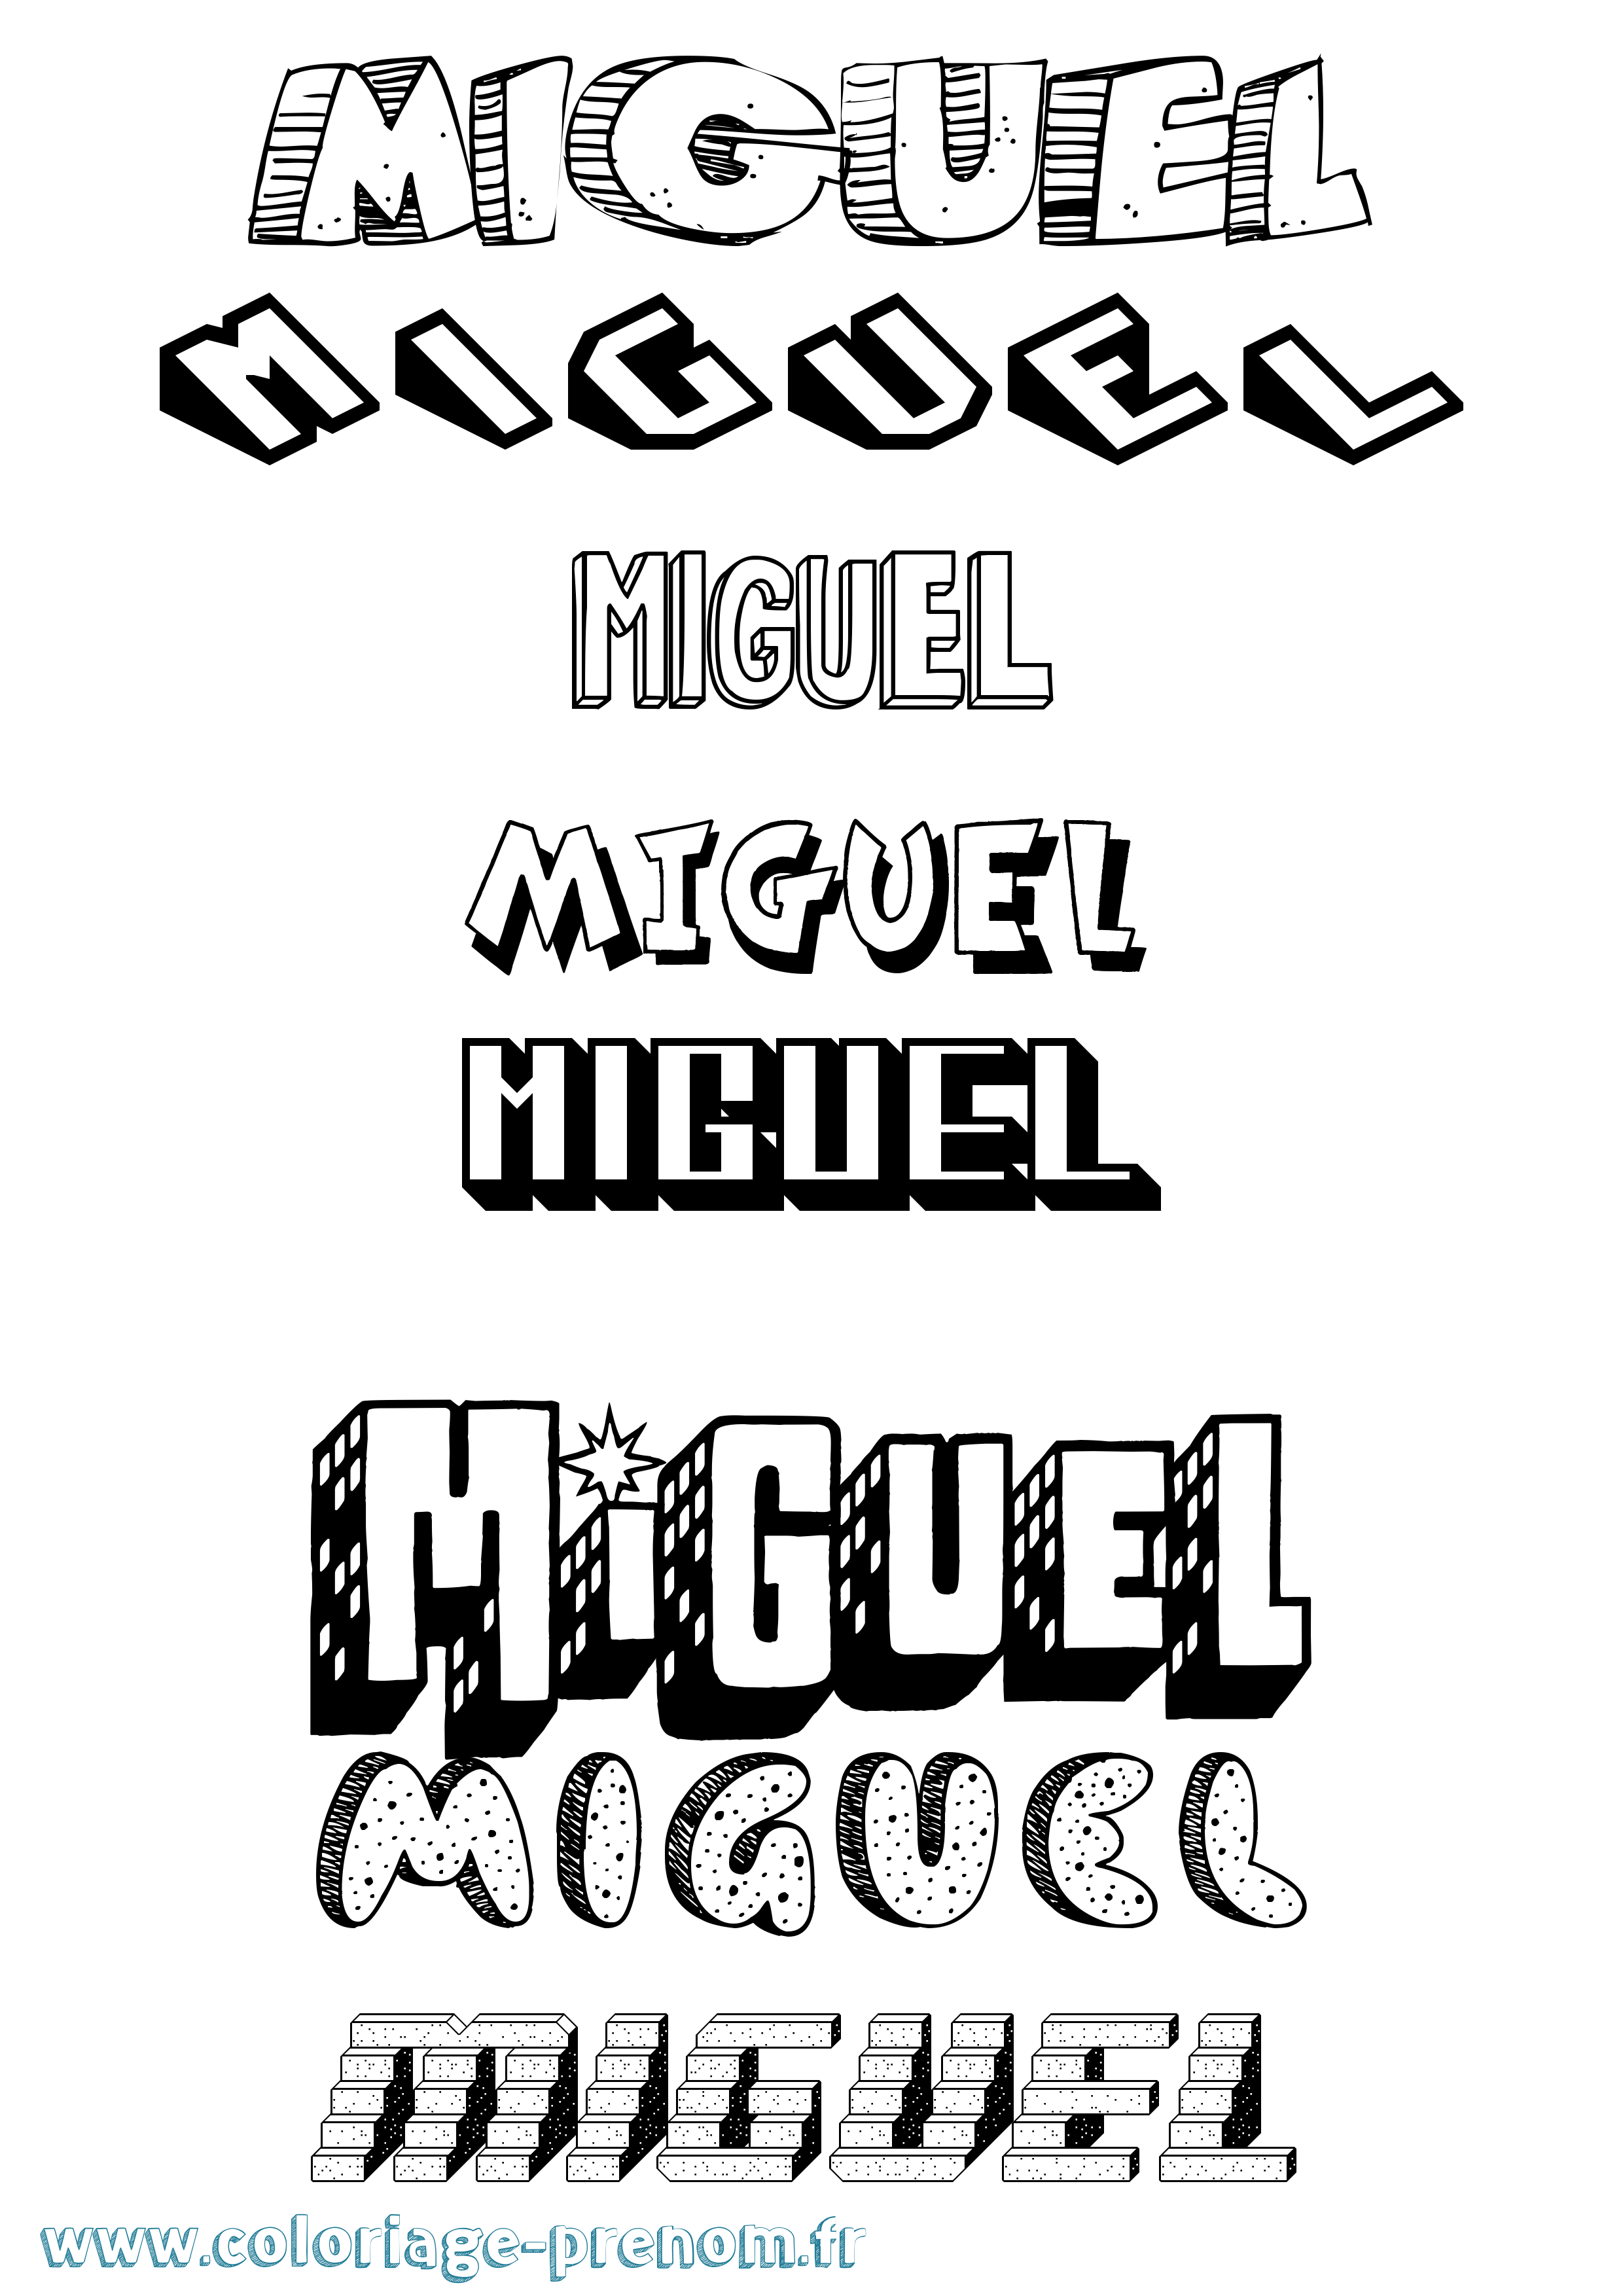 Coloriage prénom Miguel